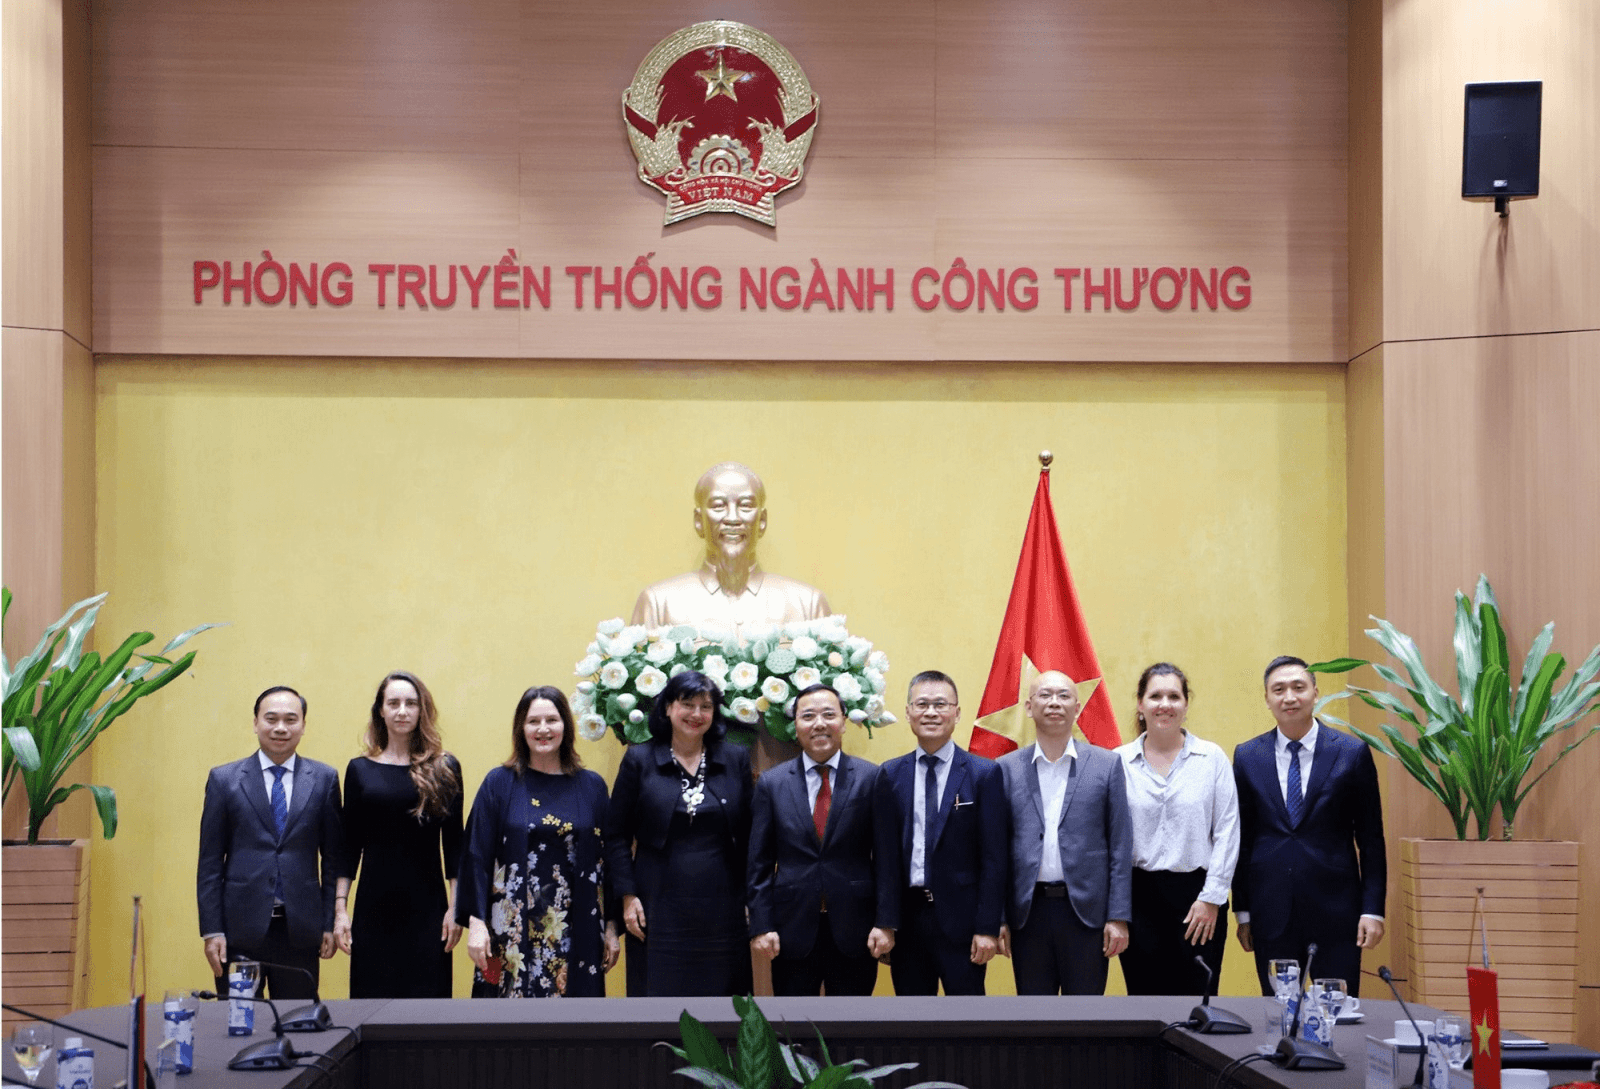 Đoàn doanh nghiệp về logistics của Slovenia sẽ sang Việt Nam kết nối đầu tư